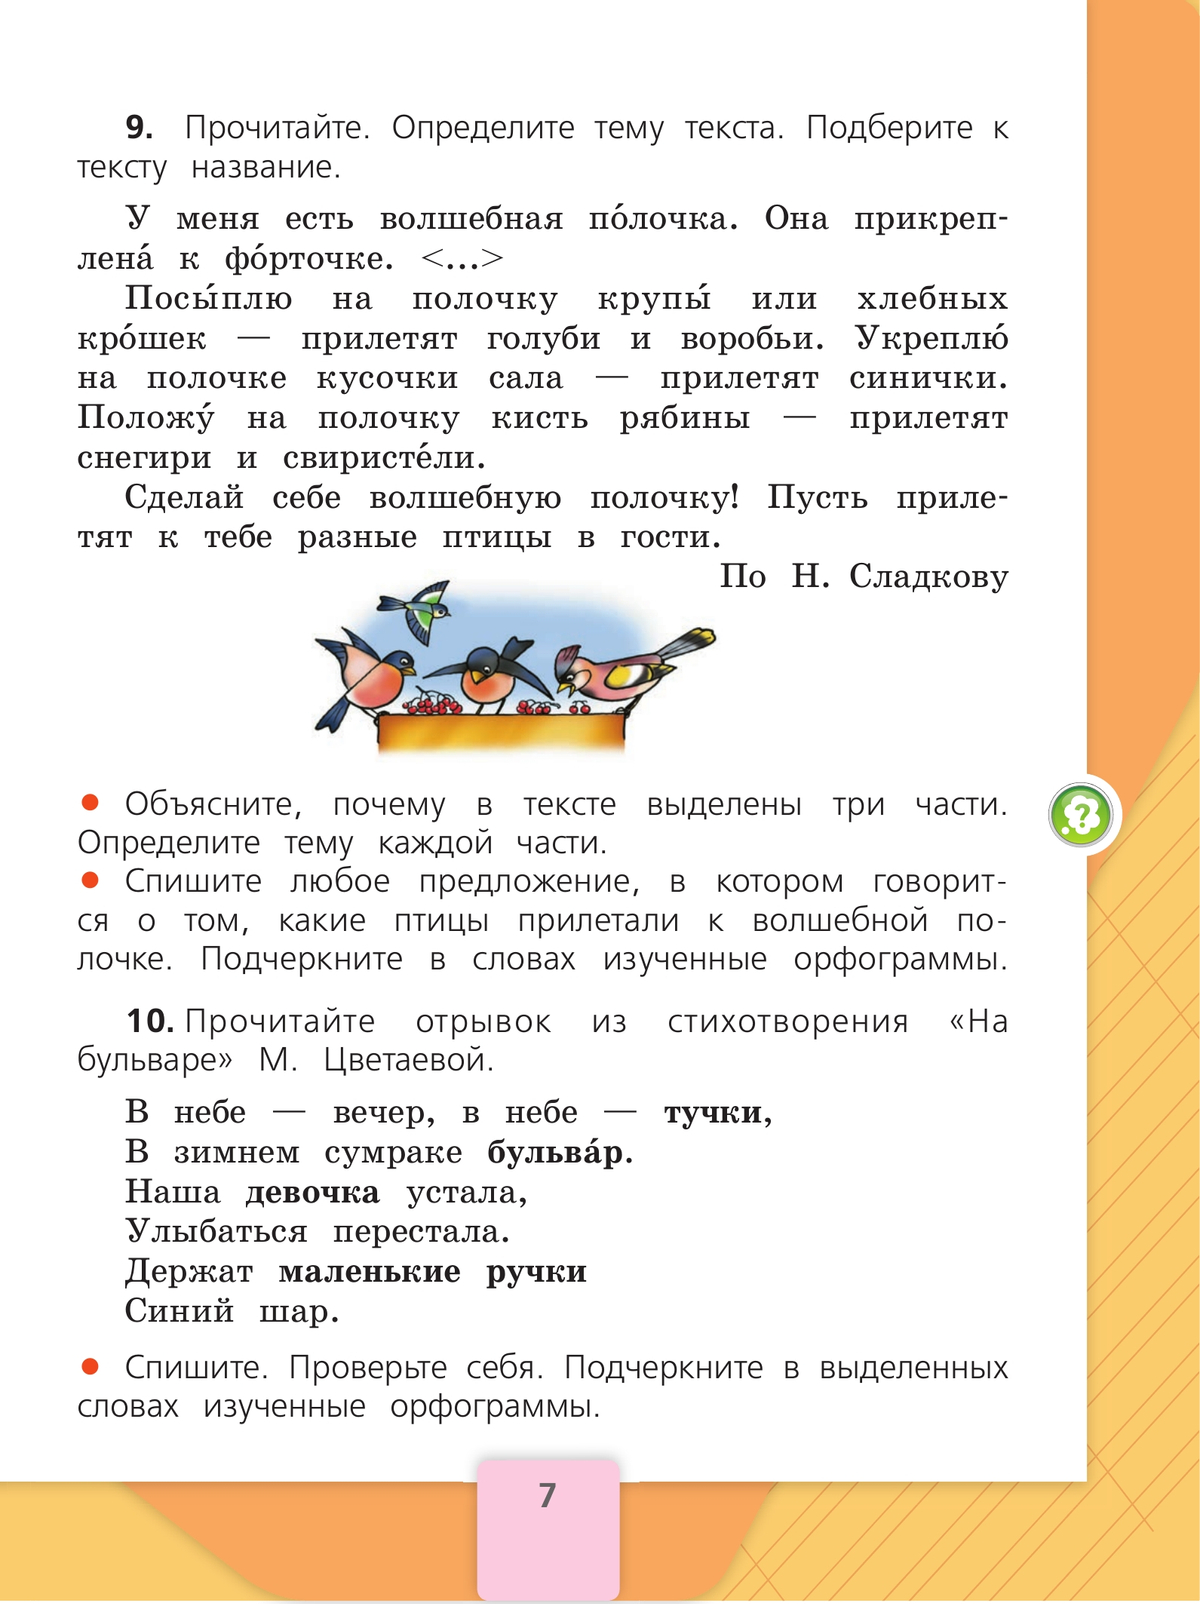 Русский язык. 2 класс. Учебник. В 2 ч. Часть 2 8